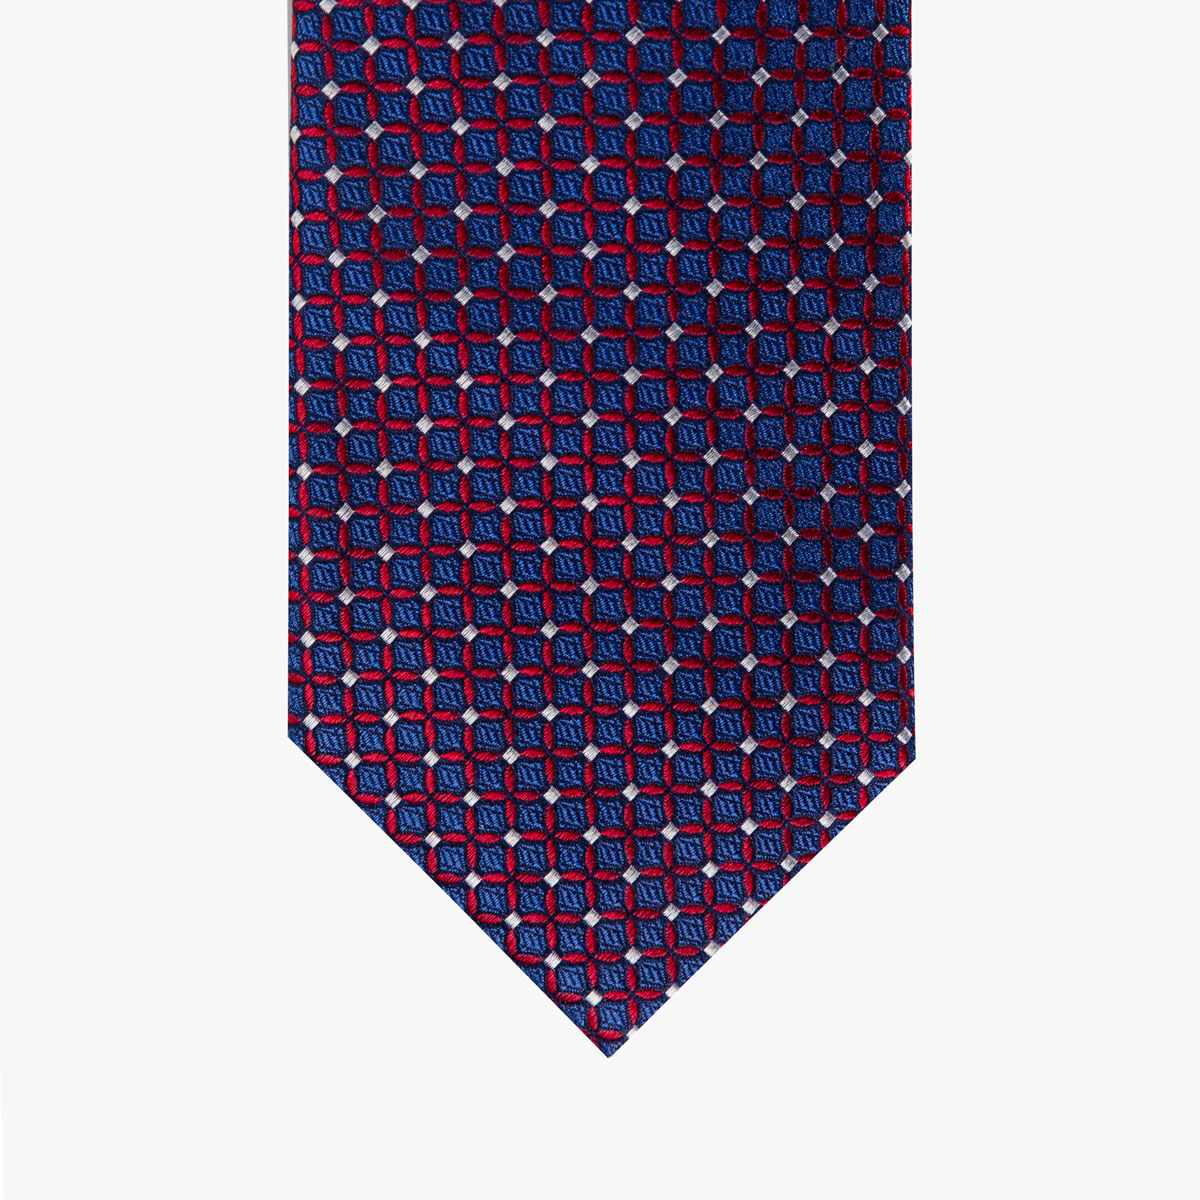 Krawatte mit geometrischem Muster in rot dunkelblau silber